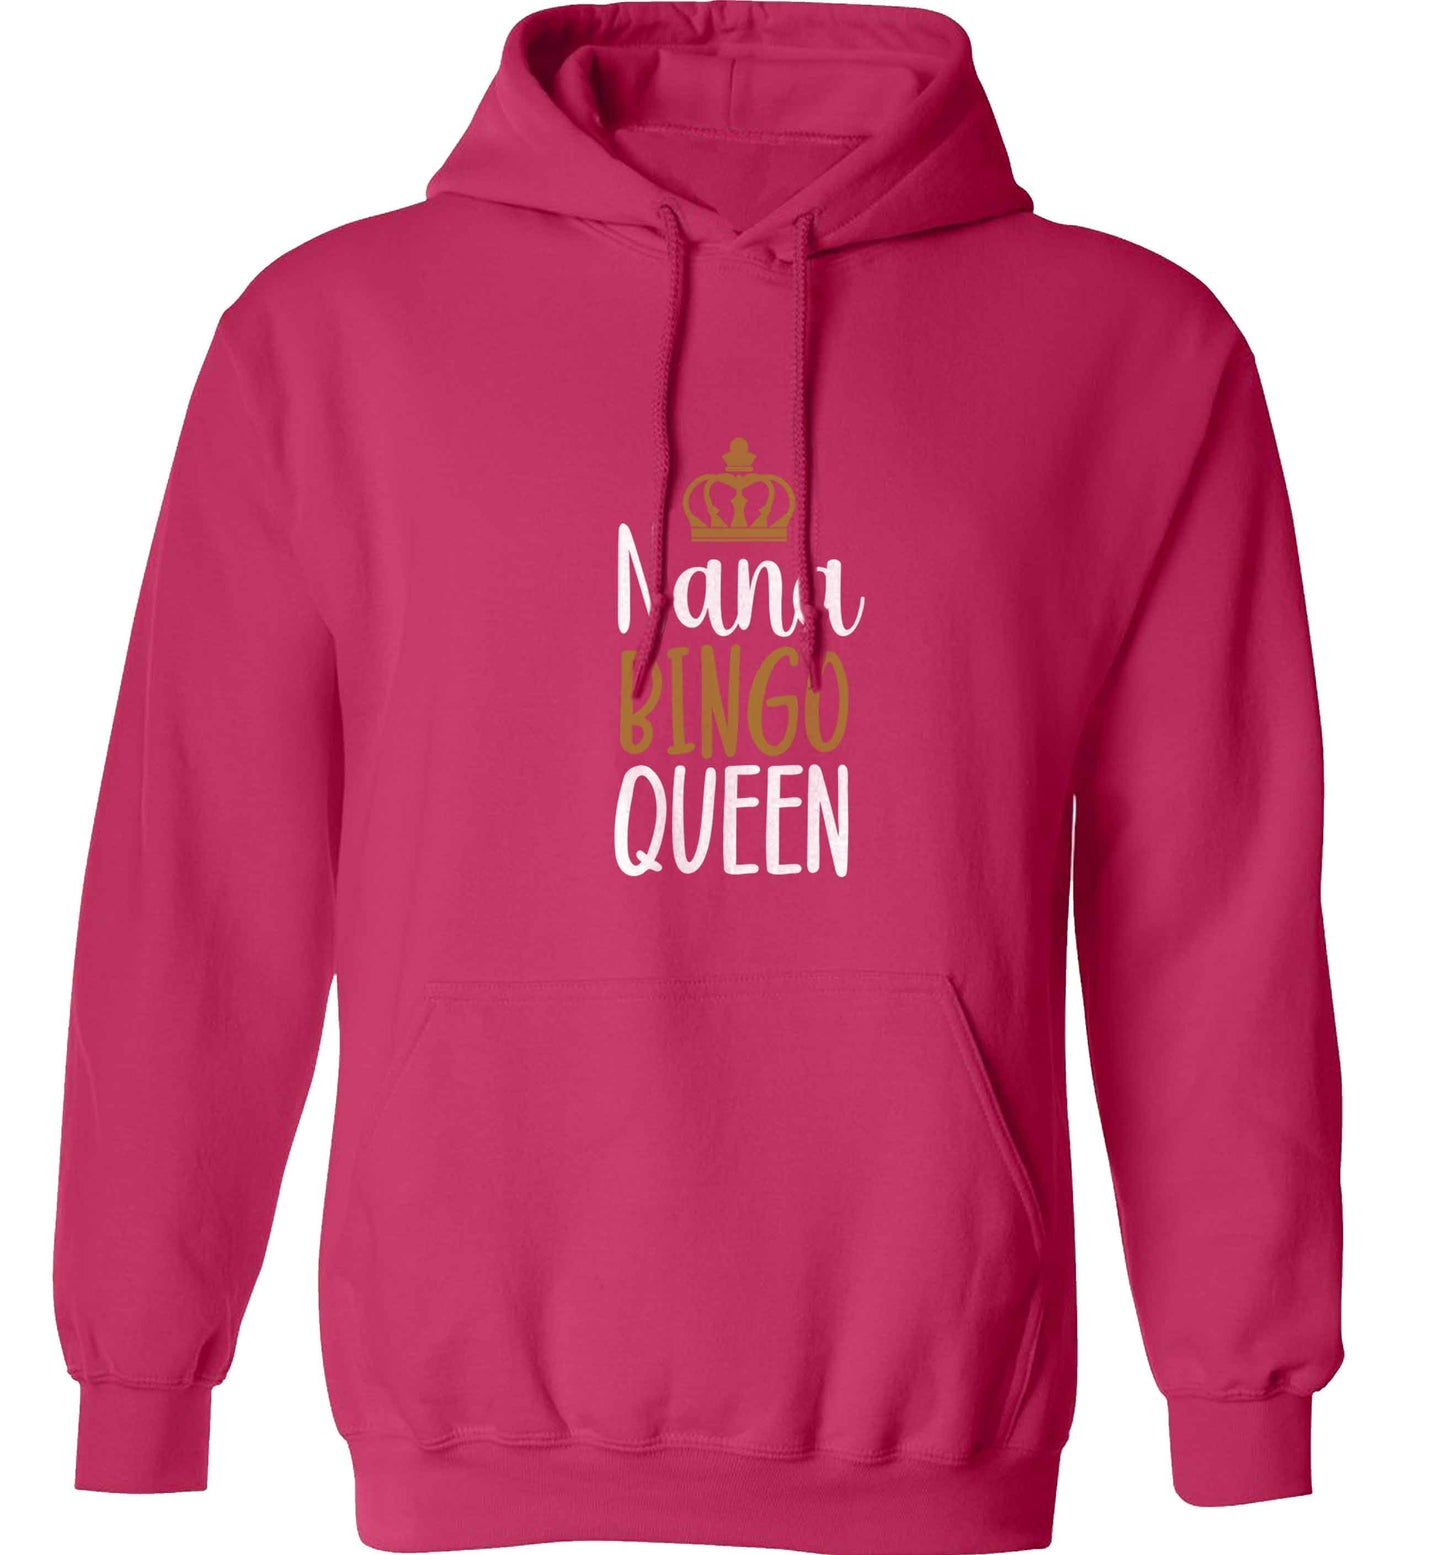 Personalised bingo queen adults unisex pink hoodie 2XL